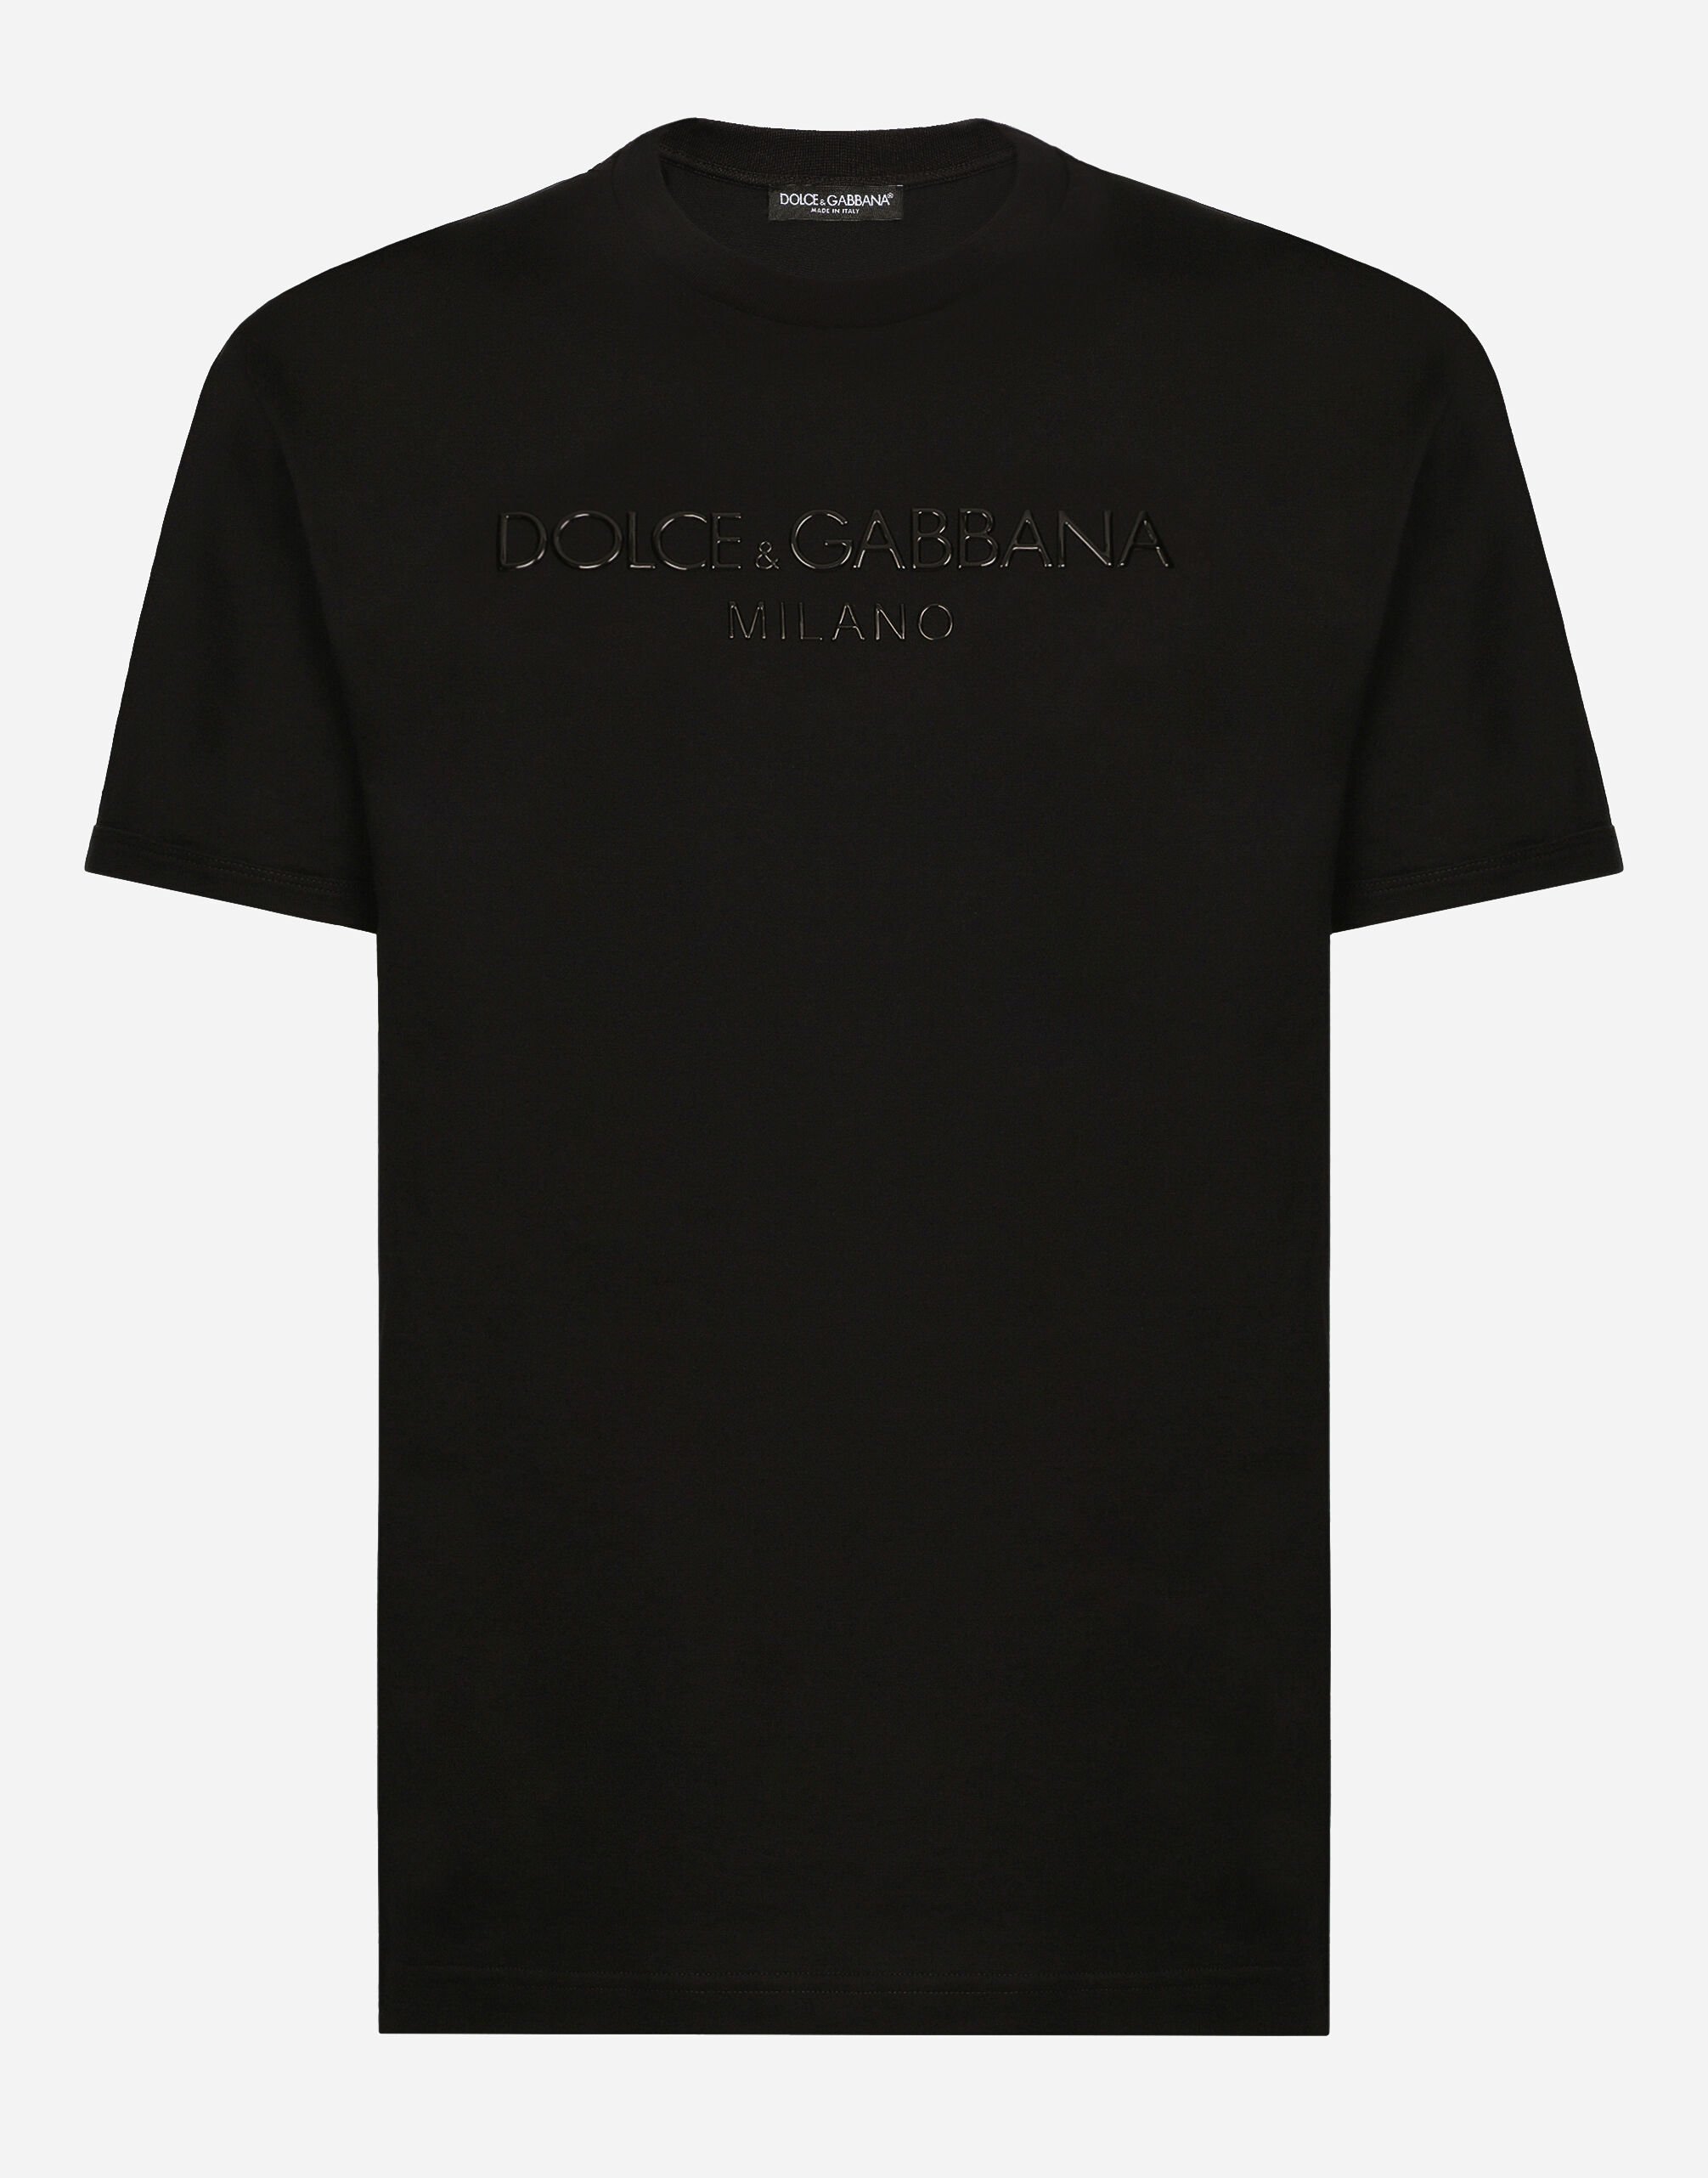 Dolce&Gabbana Rundhals-T-Shirt mit Print Dolce&Gabbana Mehrfarbig G2QU4TFRMD4